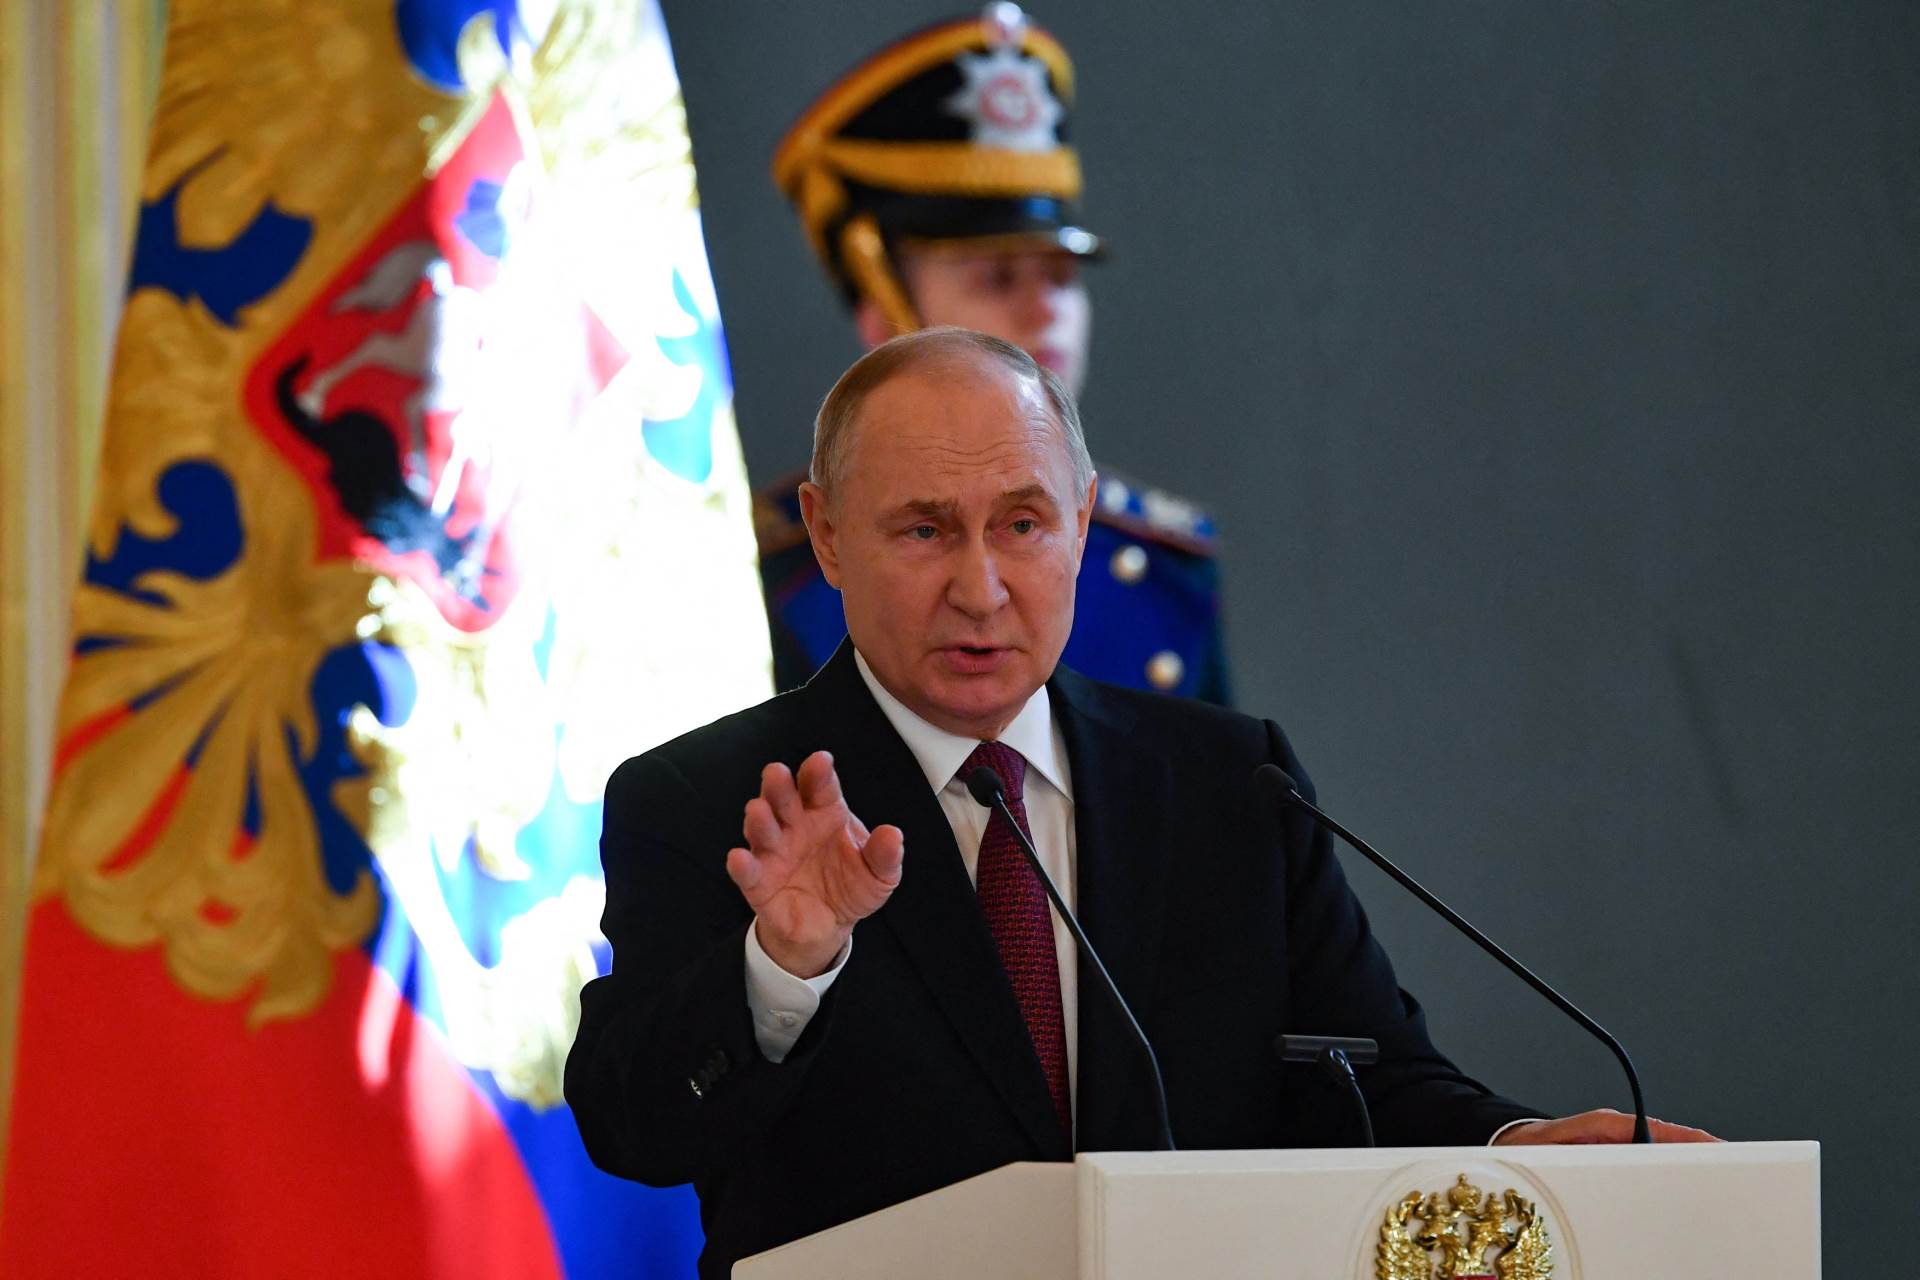  Inauguracija Vladimira Putina ko su bili gosti 